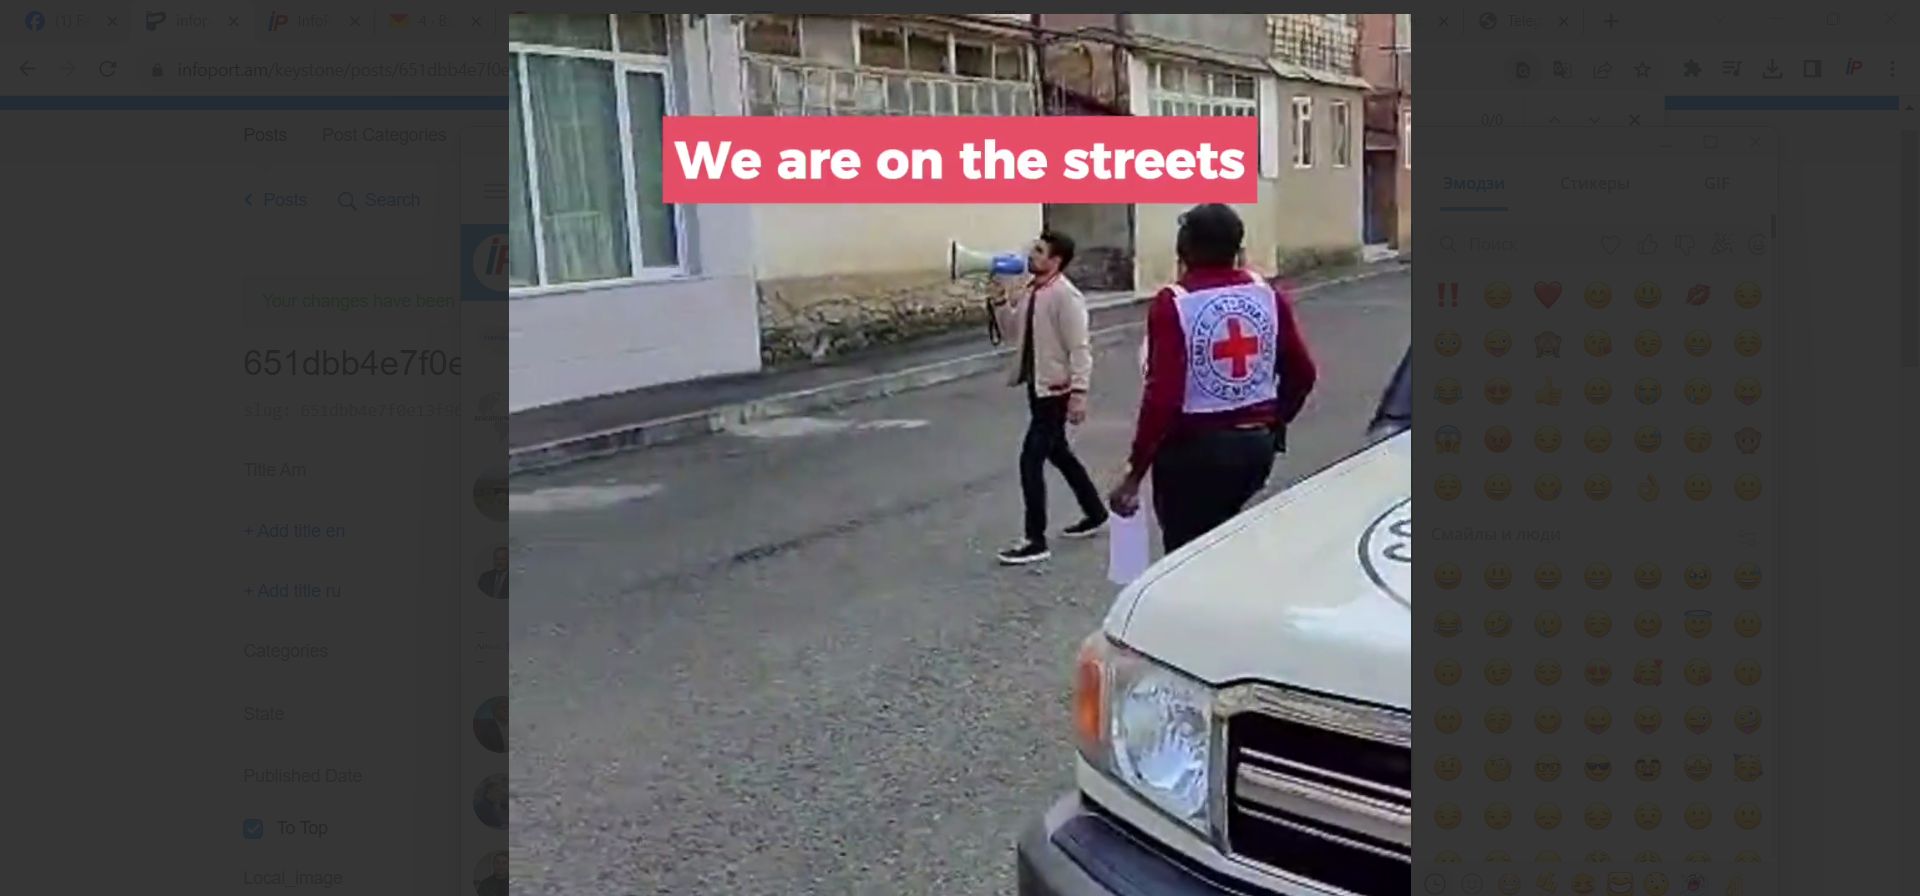 ԿԽՄԿ-ի թիմերը Ստեփանակերտում բարձրախոսով շրջել են փողոցներով, որպեսզի այնտեղ մնացած տարեցներին, հիվանդներին օգնեն տարհանվել